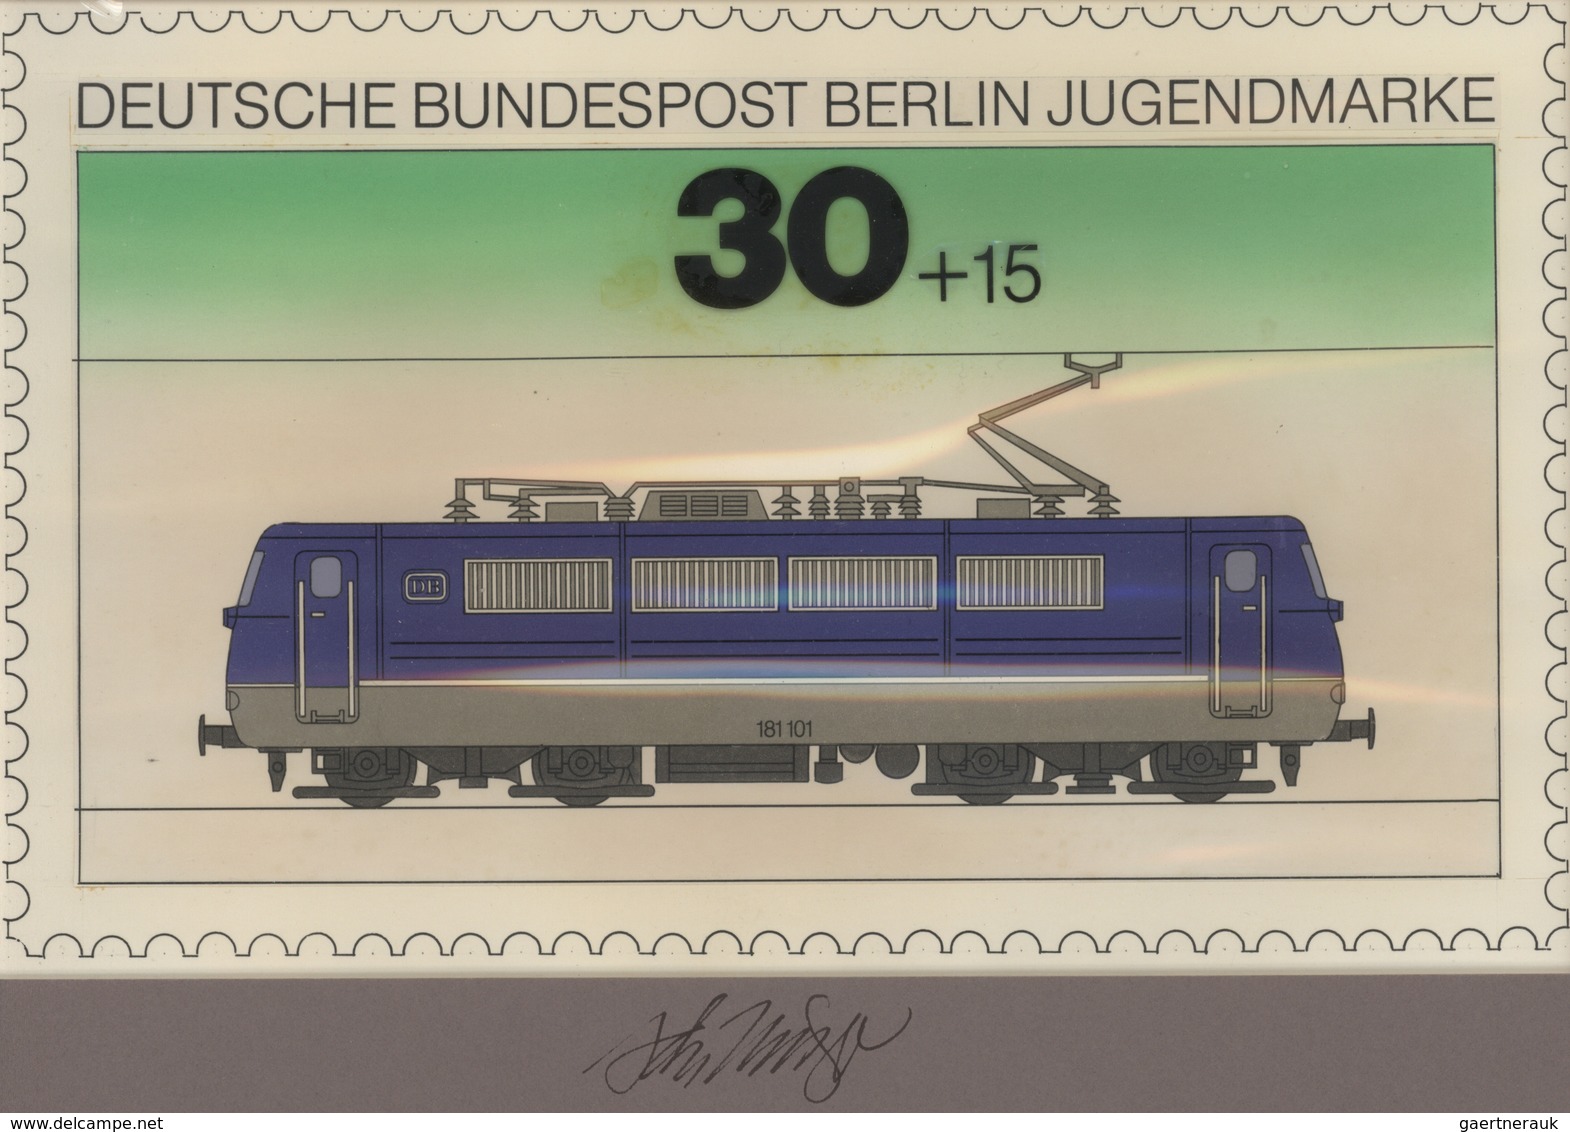 Thematik: Eisenbahn / Railway: 1975, Berlin, Nicht Angenommener Künstlerentwurf (27x16,5) Von Prof. - Trains